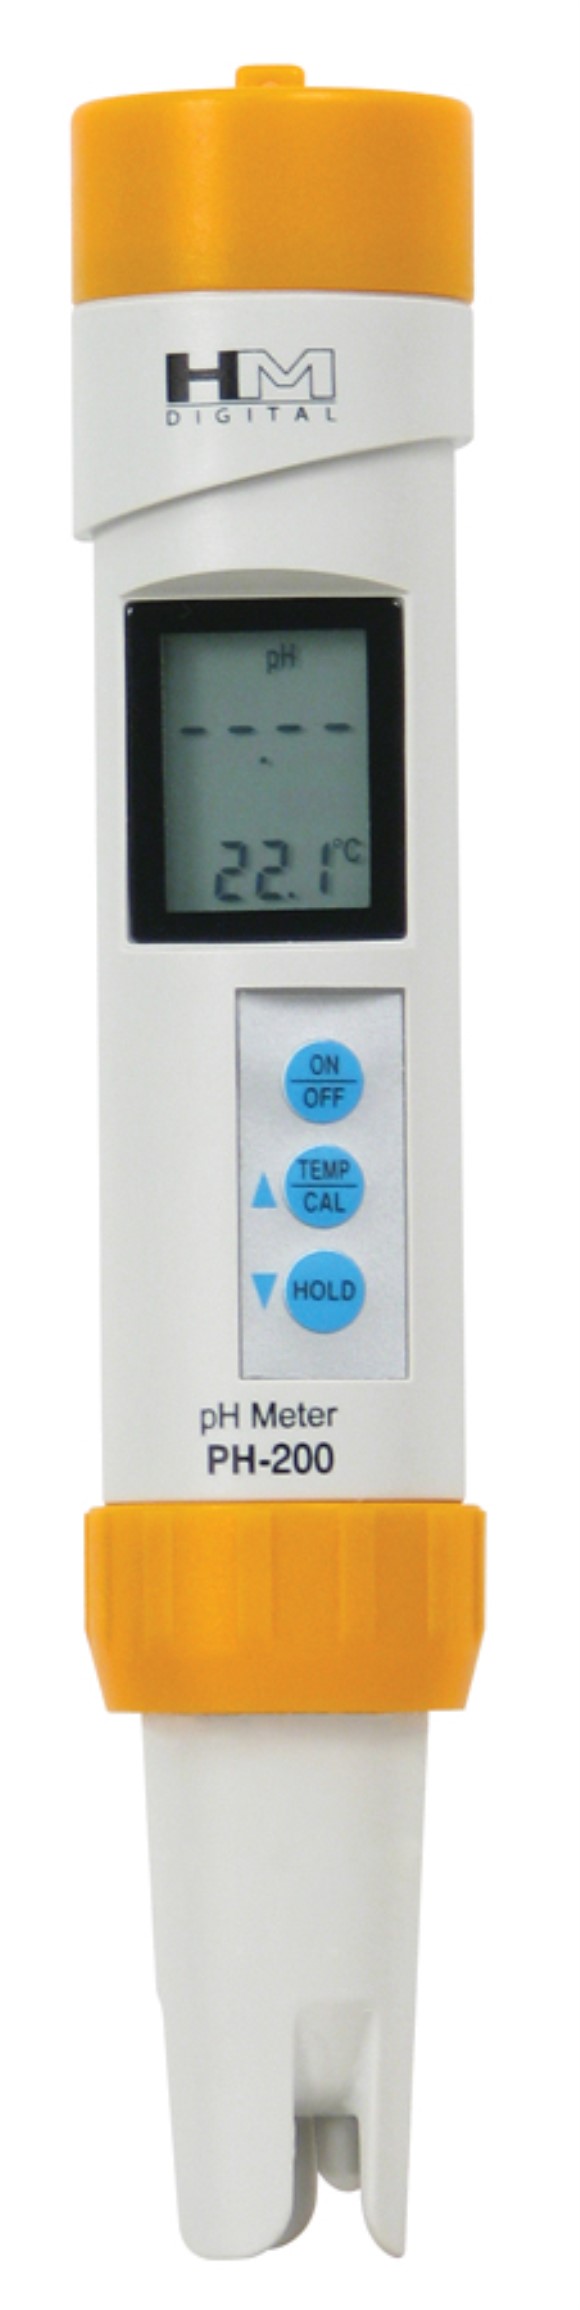 HM Digital Waterproof pH Meter